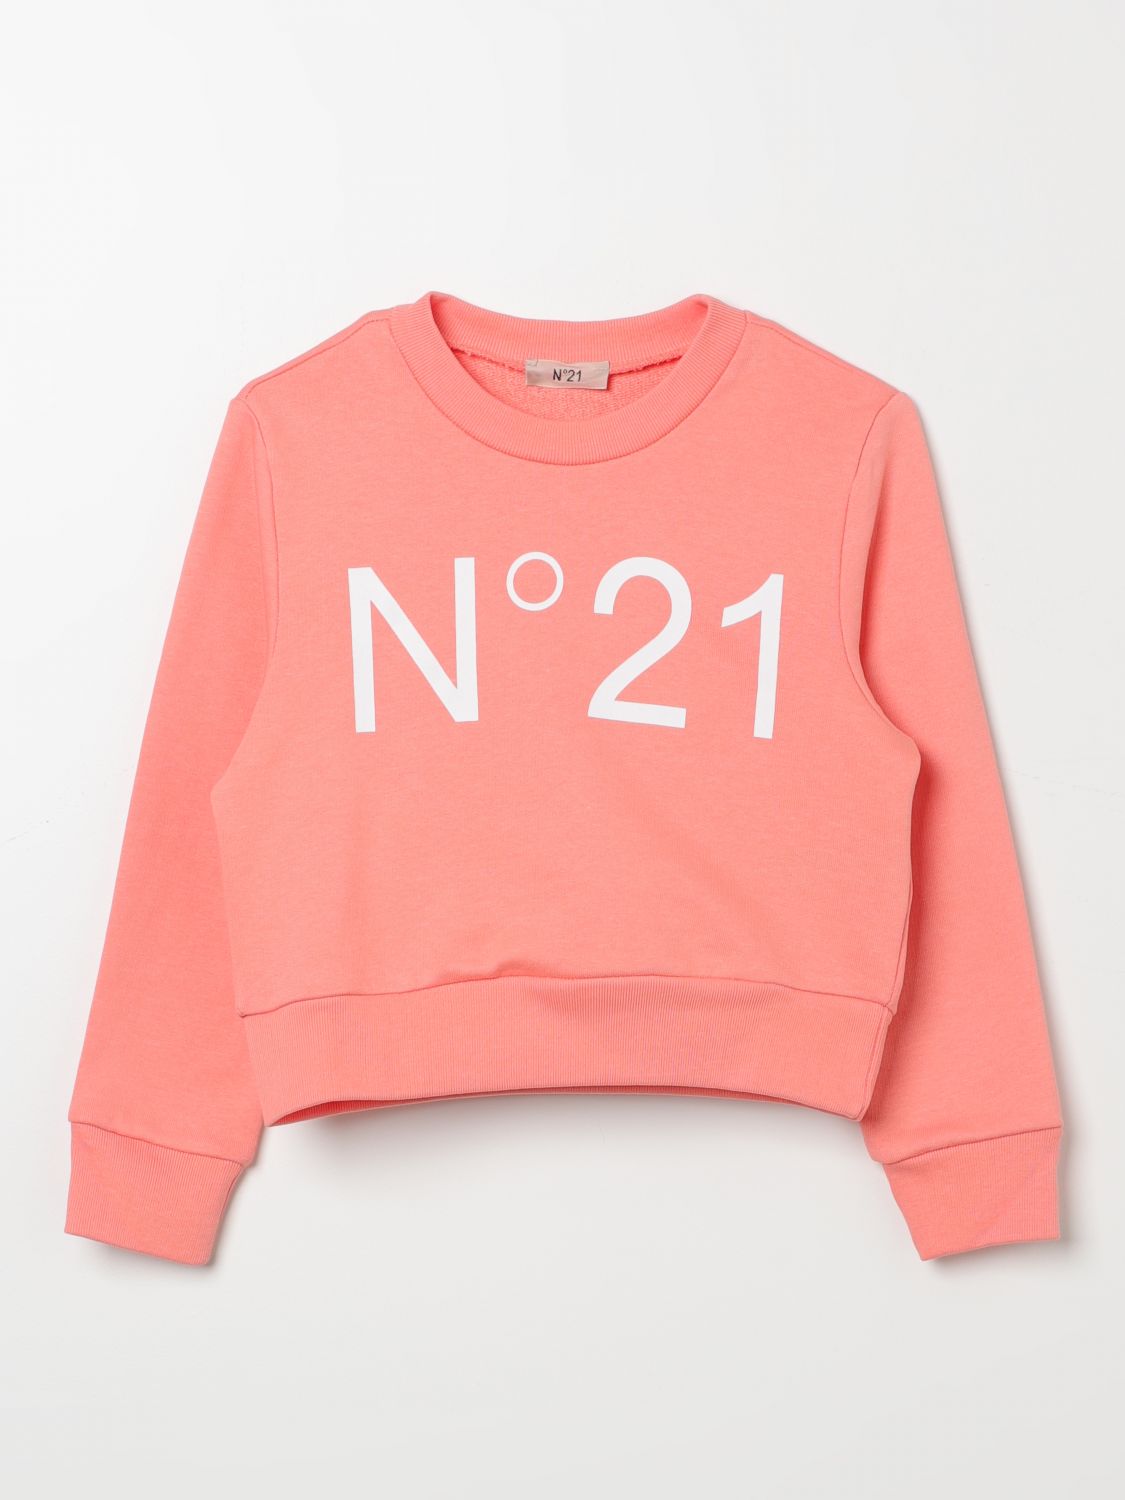 Shop N°21 Sweater N° 21 Kids Color Pink